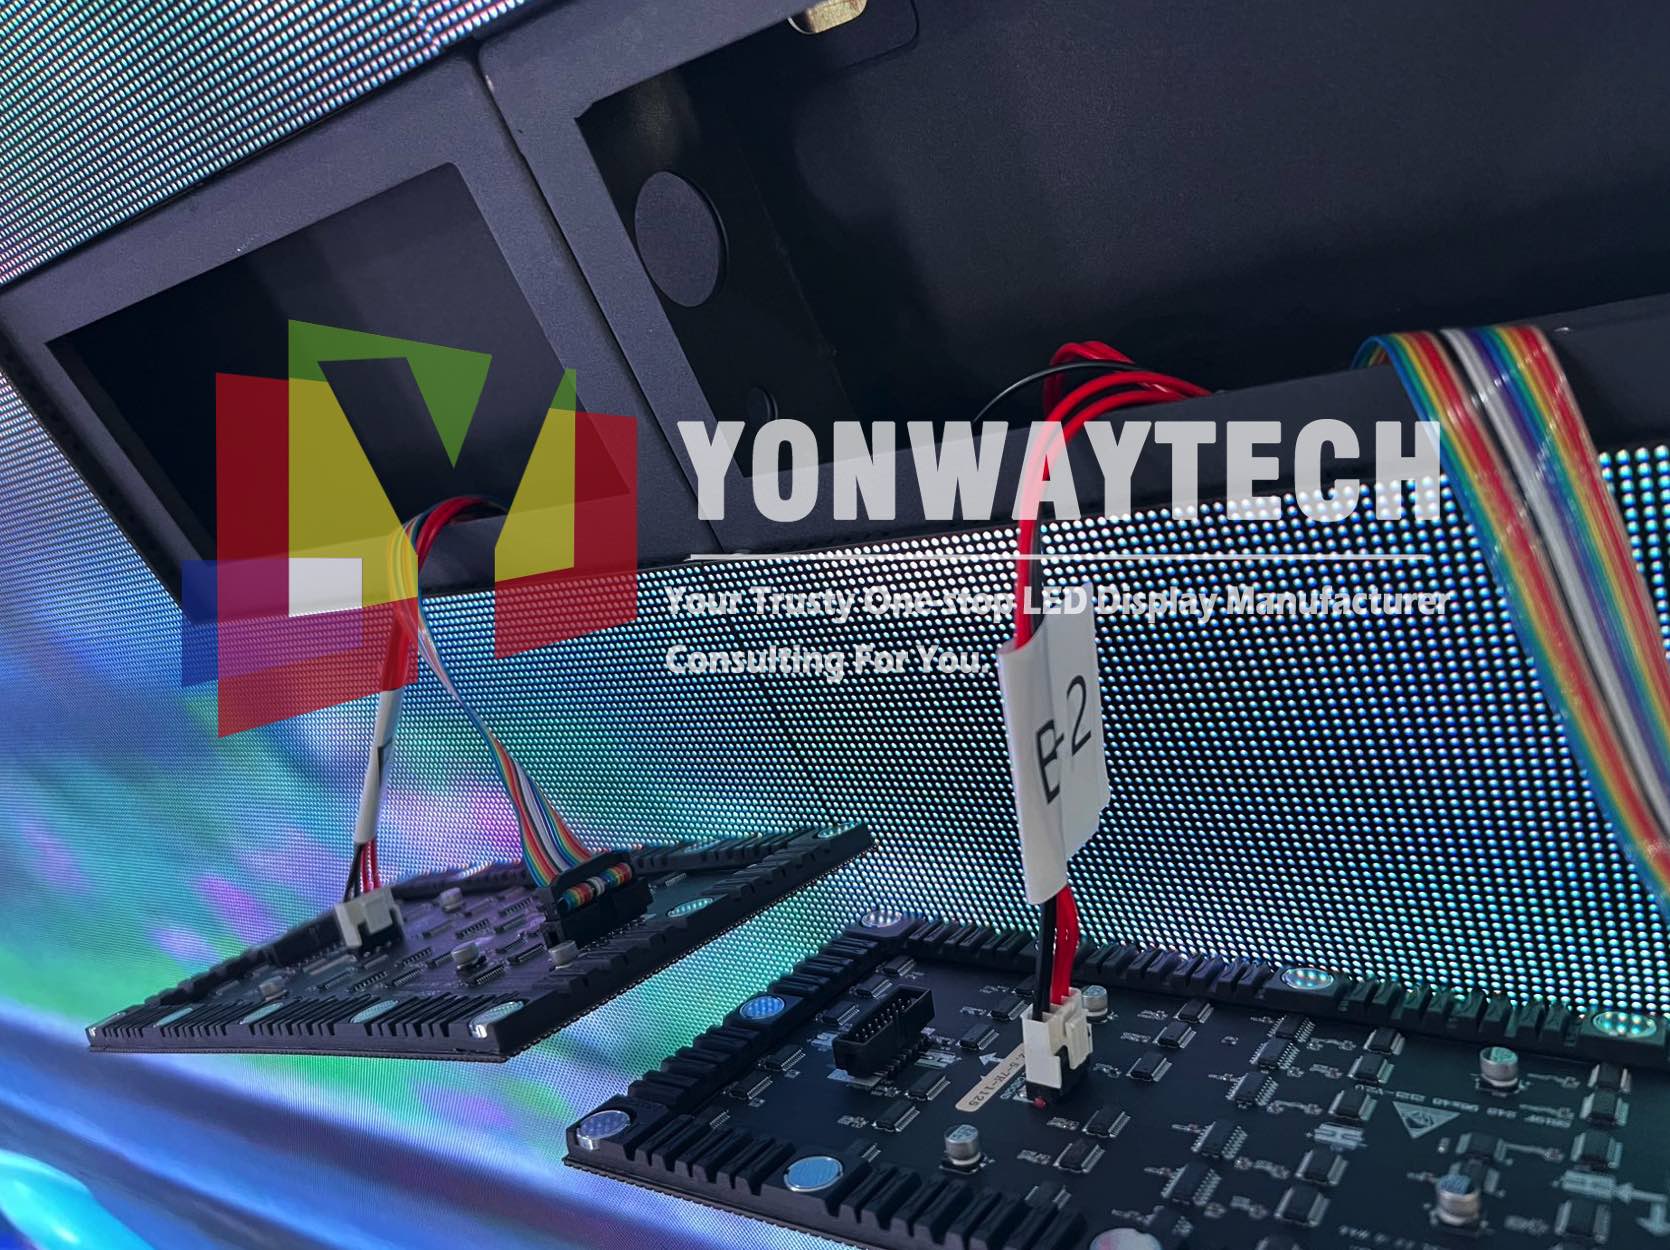 Hoë verfris sagte geleide module vertoon Yonwaytech LED